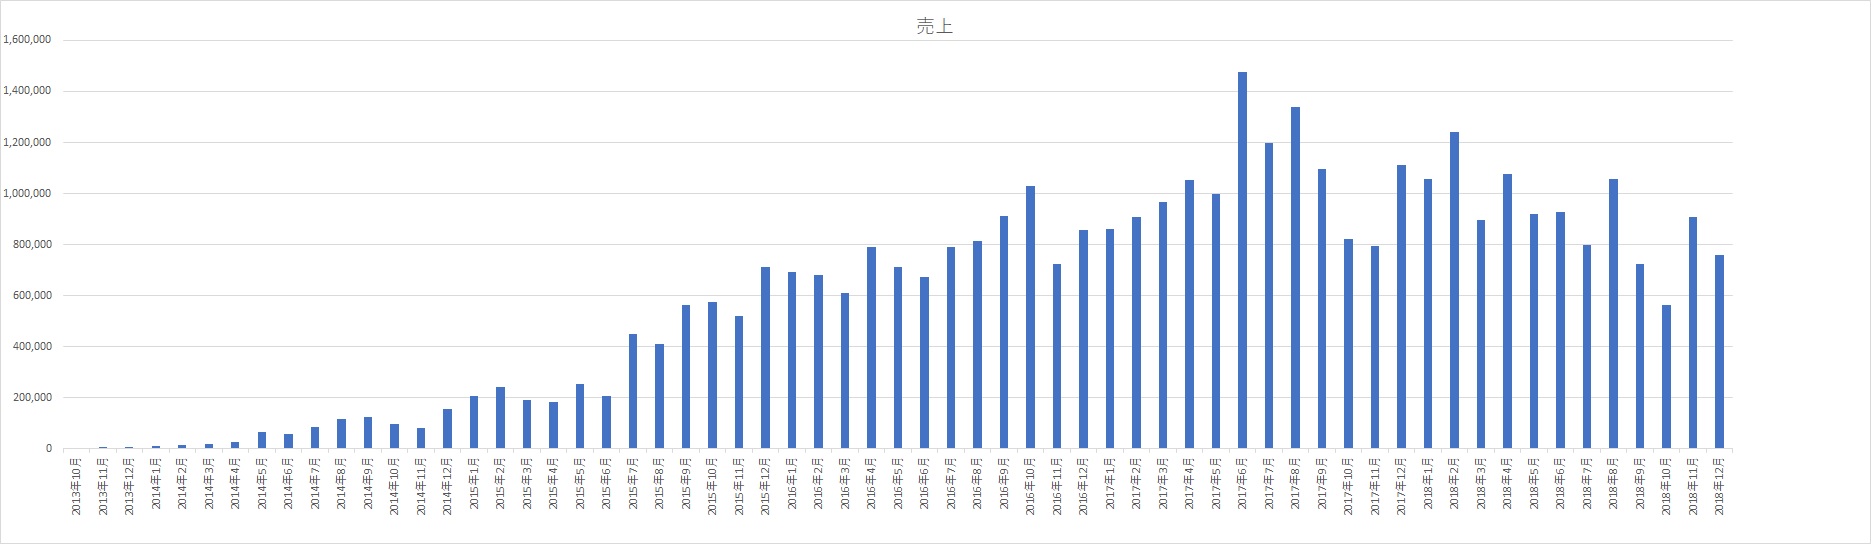 アフィリエイト売上の推移2013年～2018年